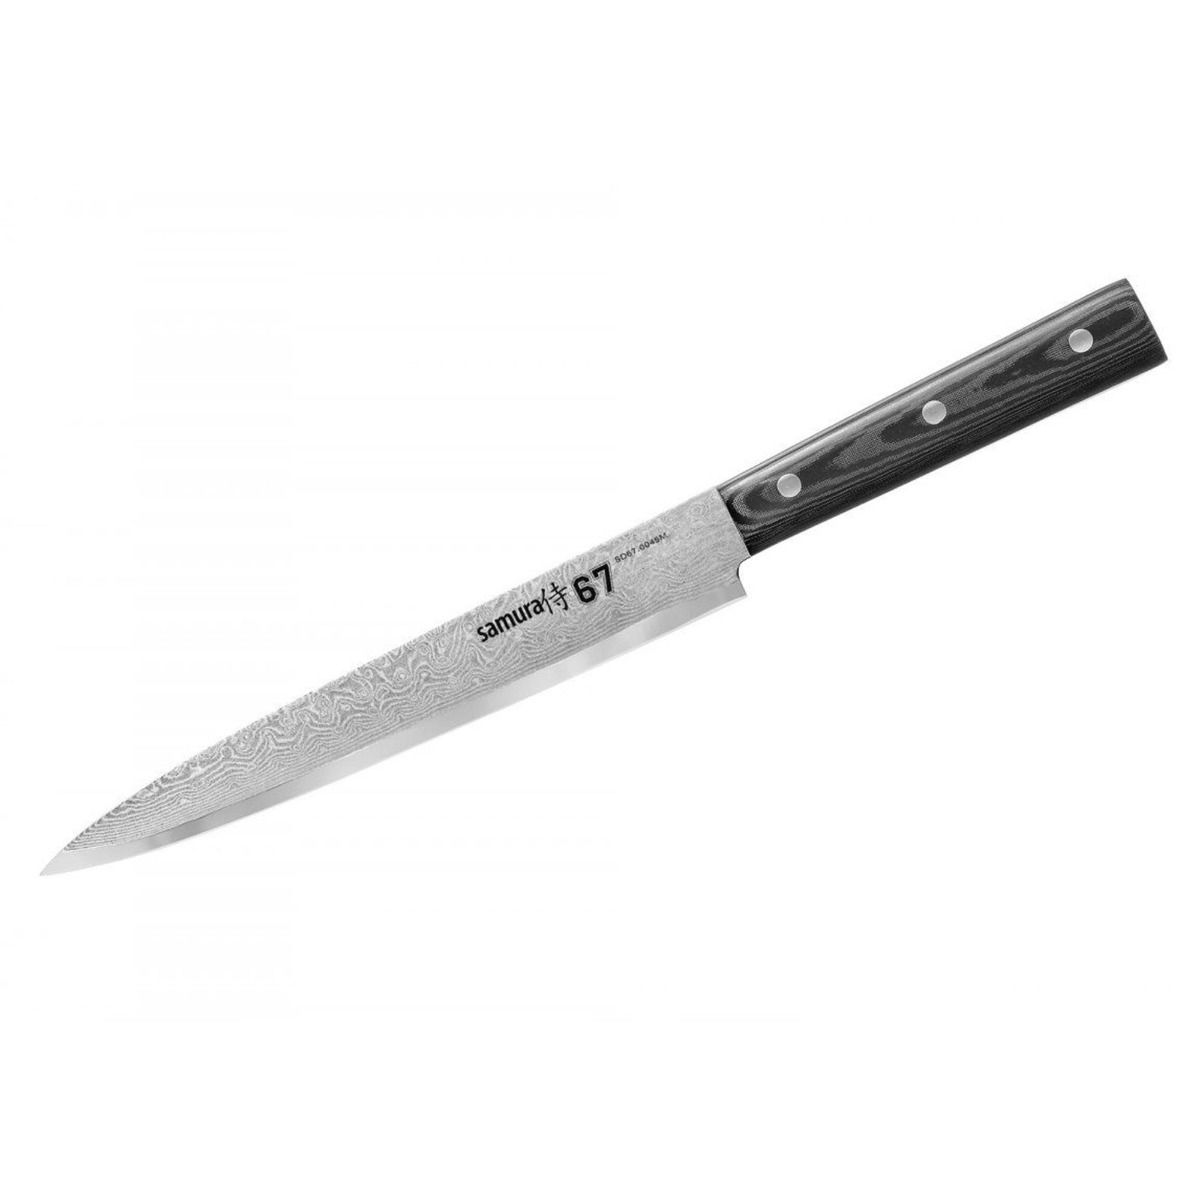 Μαχαίρι τεμαχισμού 19.5cm, DAMASCUS 67 - SAMURA®️